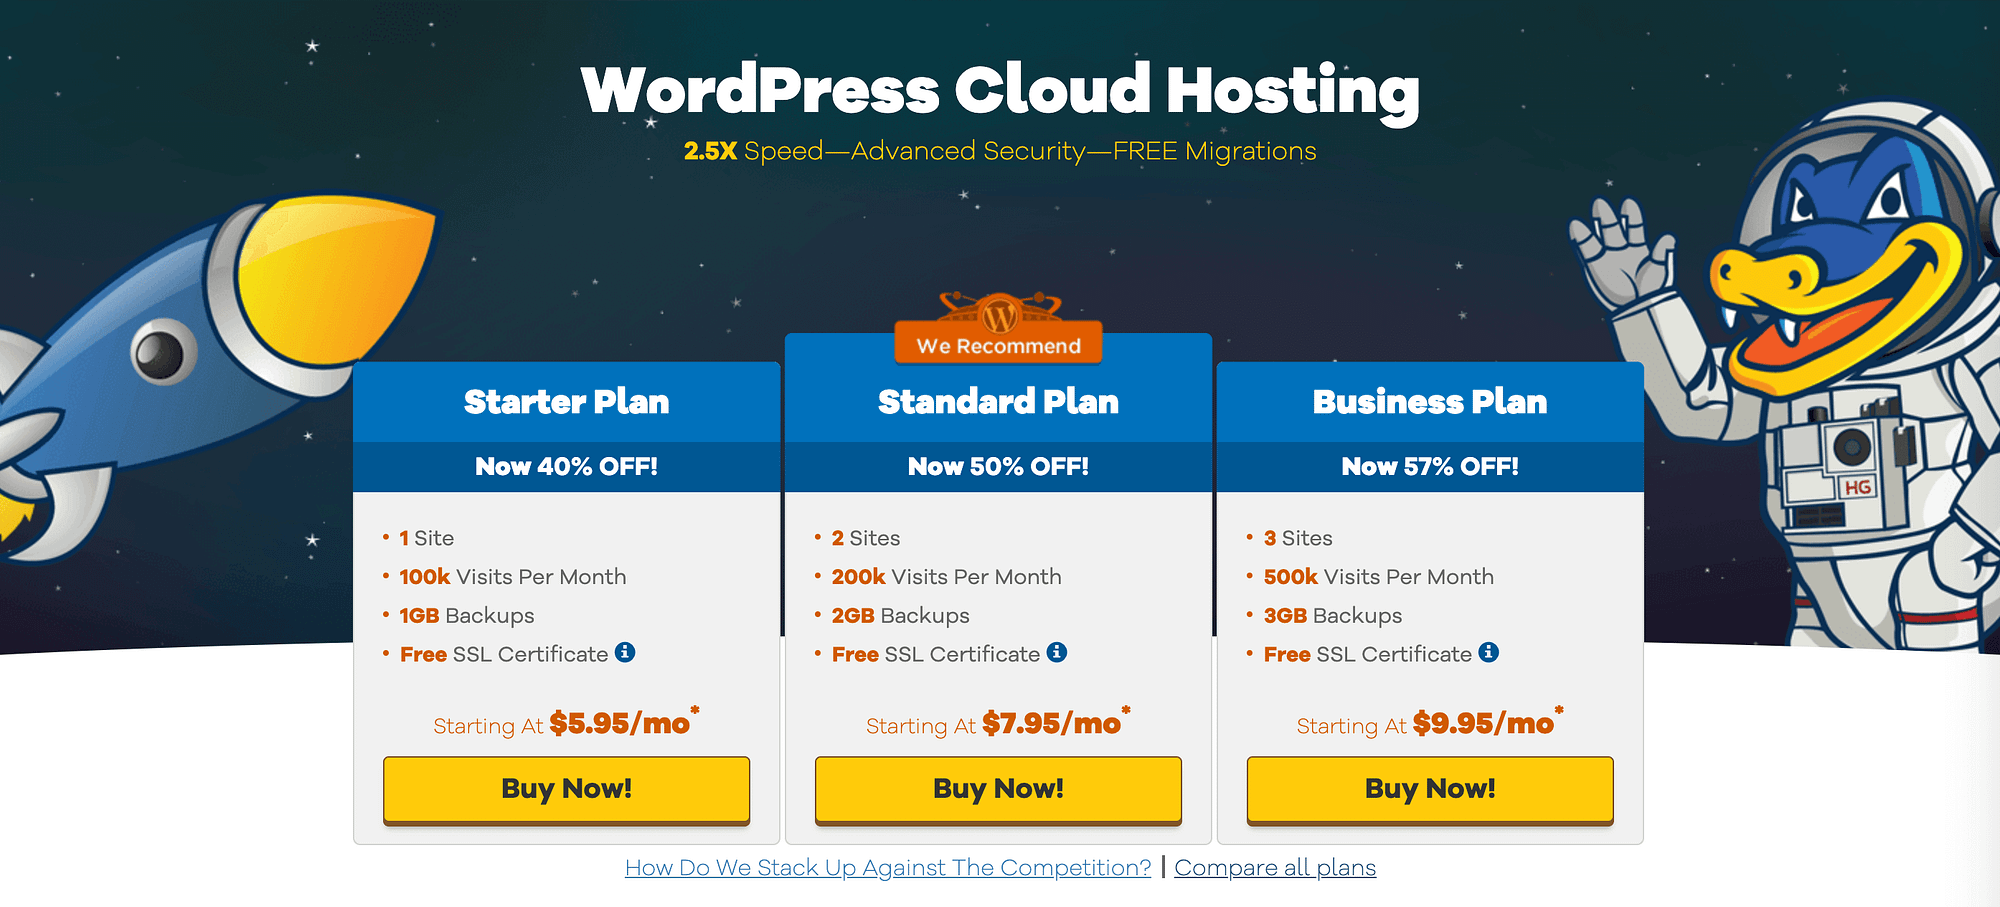 HostGator's WordPress bảng giá lưu trữ so với Bluehost